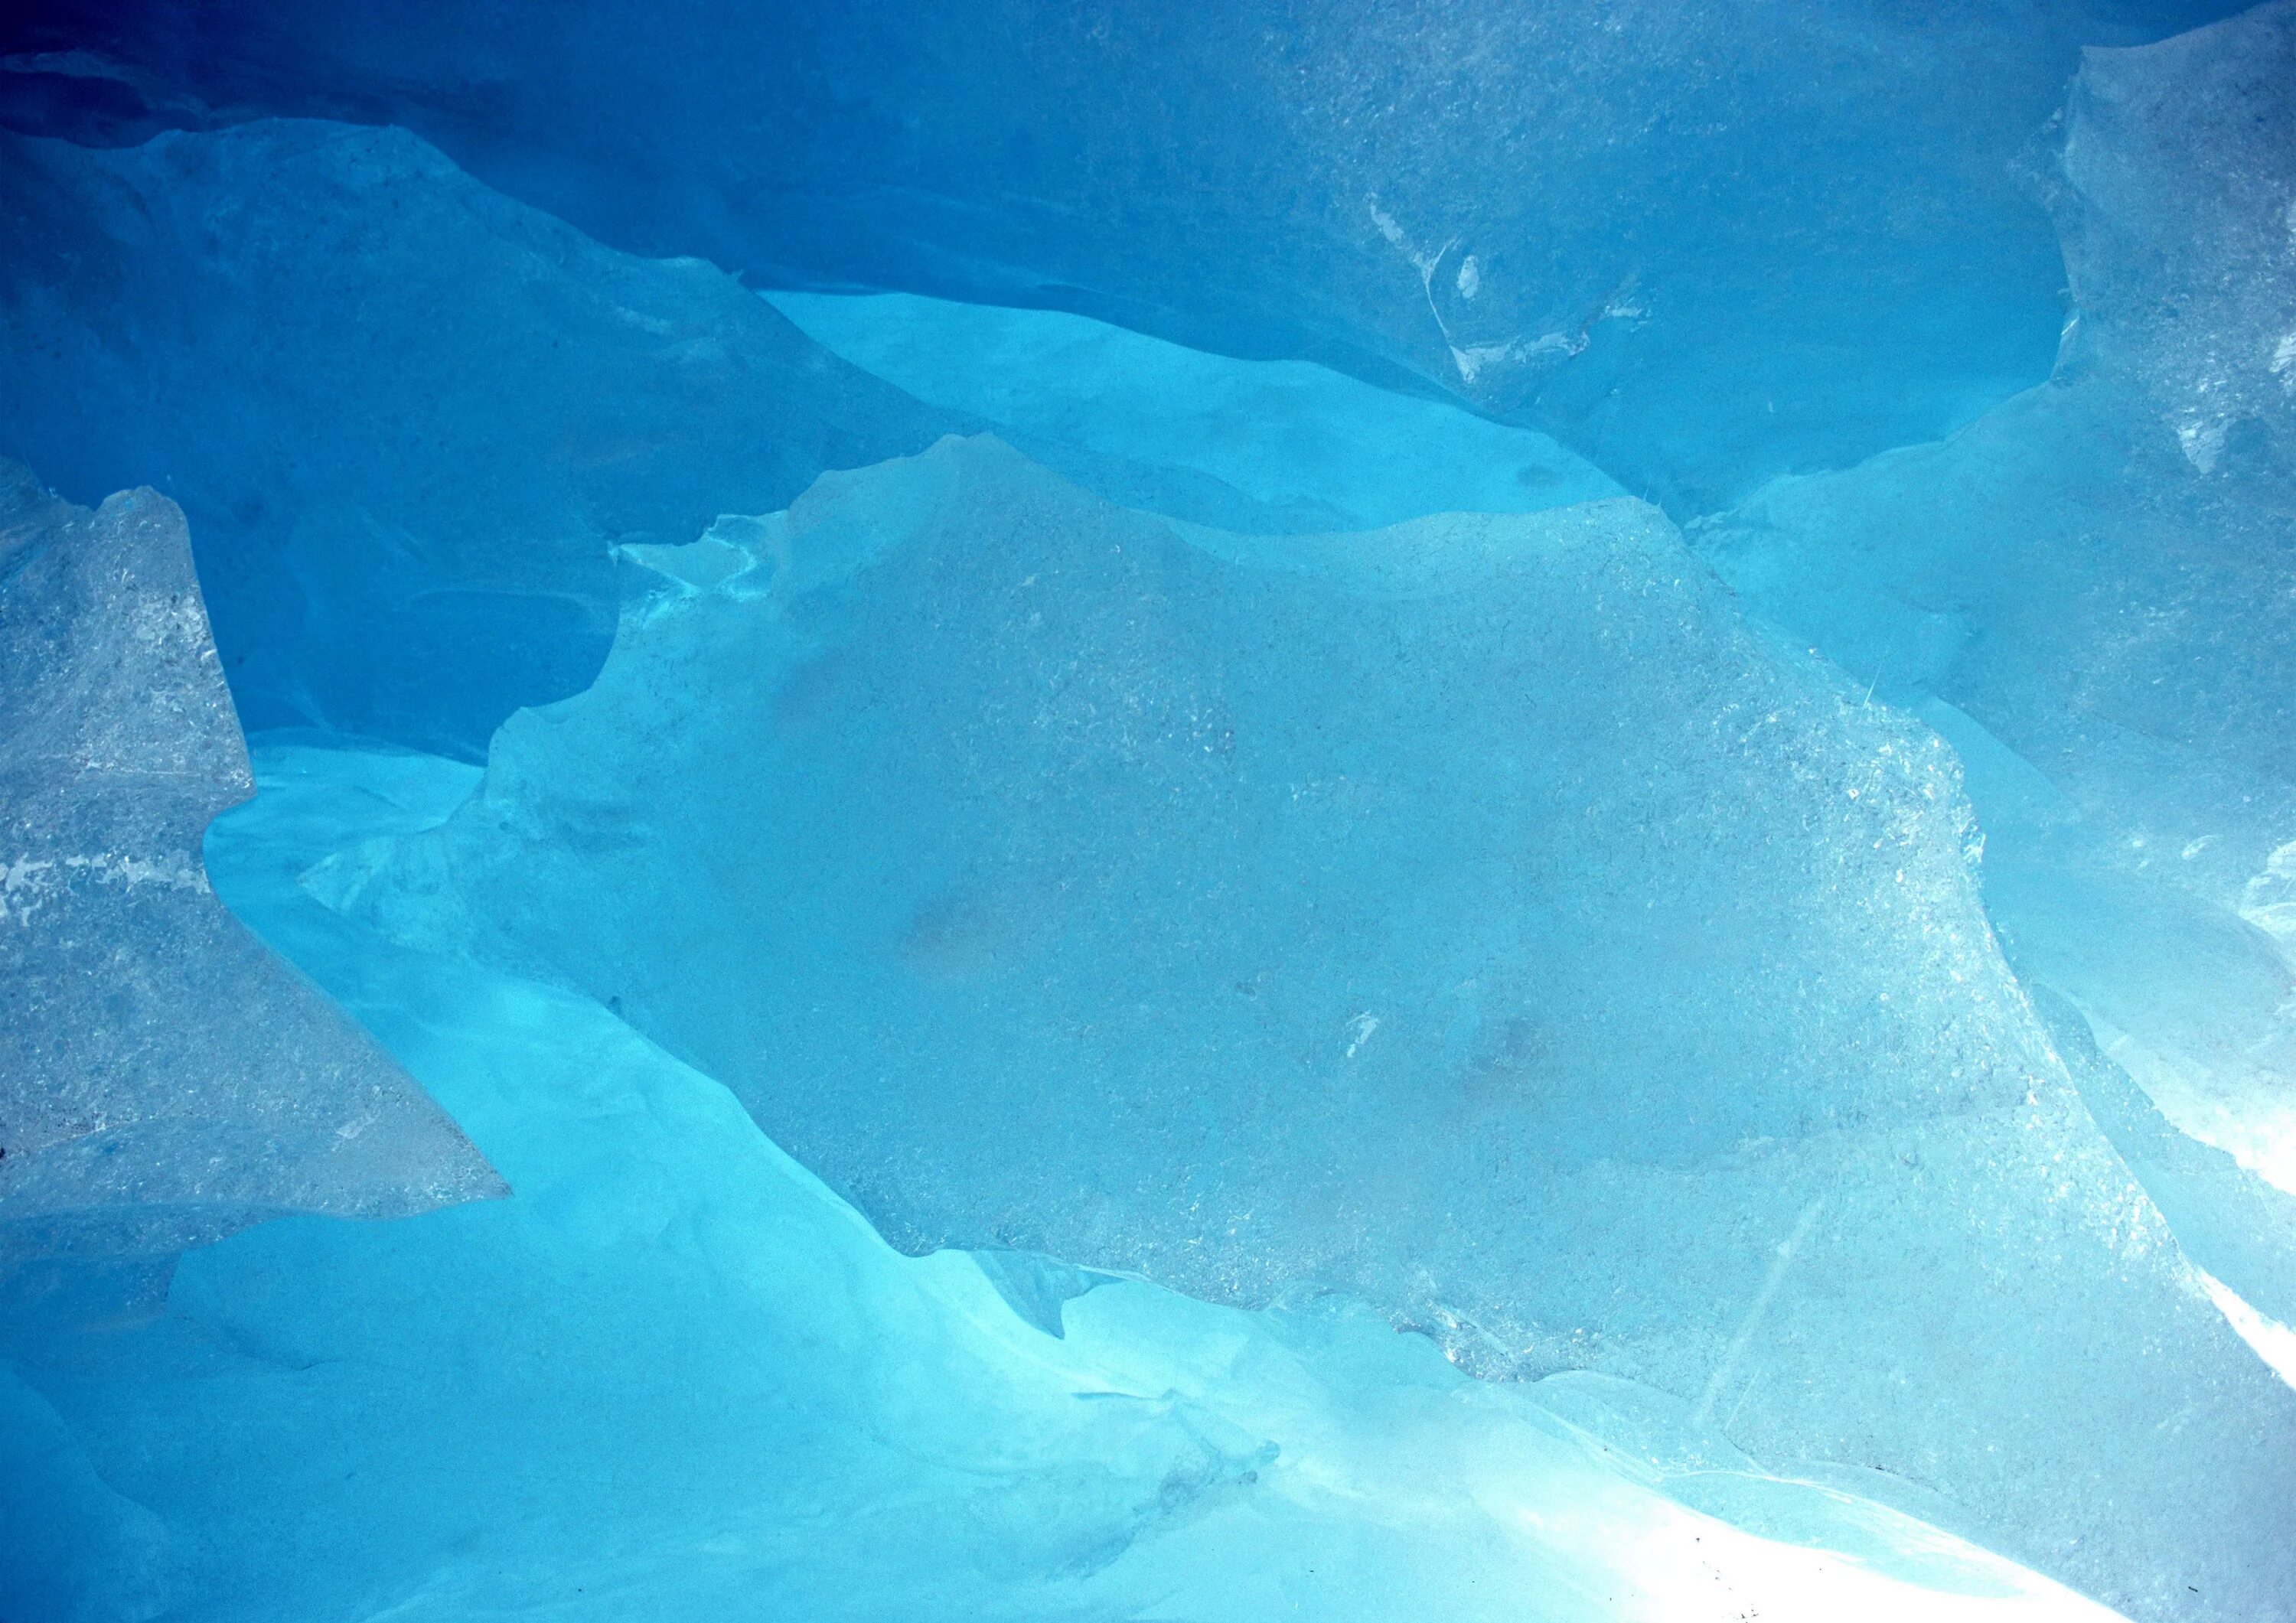 Вода выступила на поверхность льда. Ледяная поверхность. Лед. Текстура льда. Голубой лед.